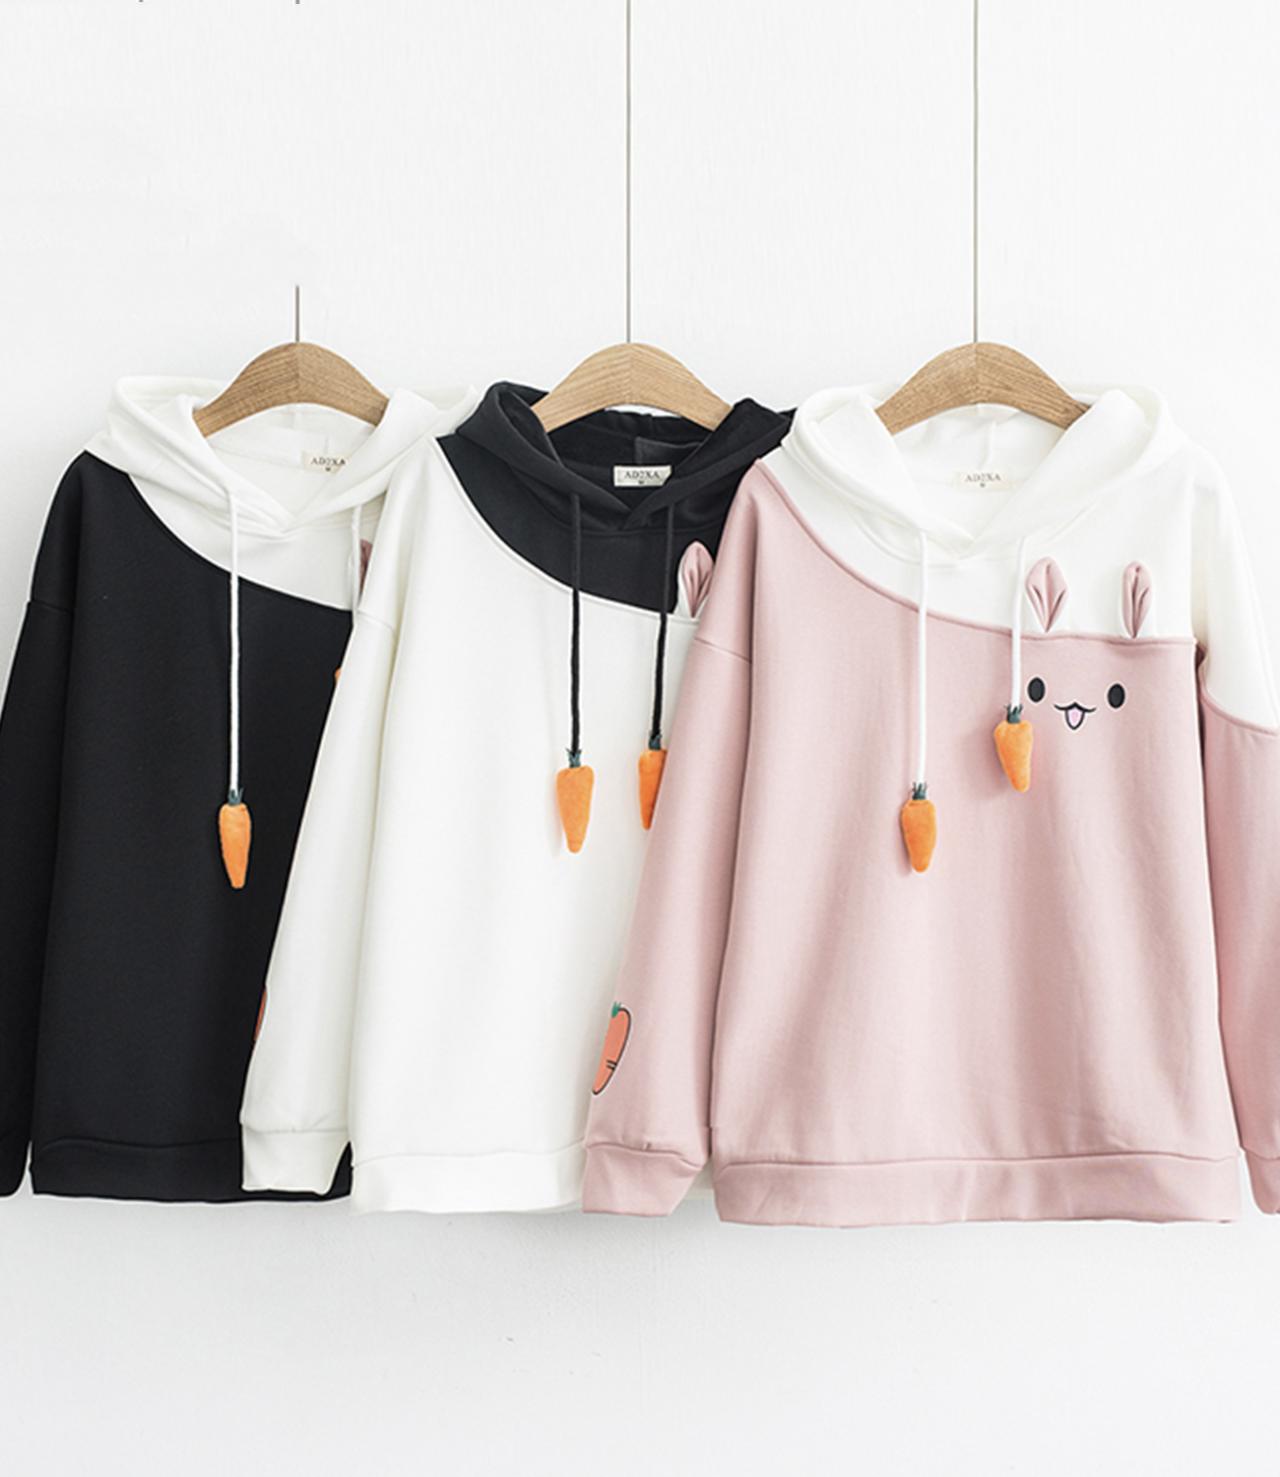 Cute bunny long-sleeved hoodie  284